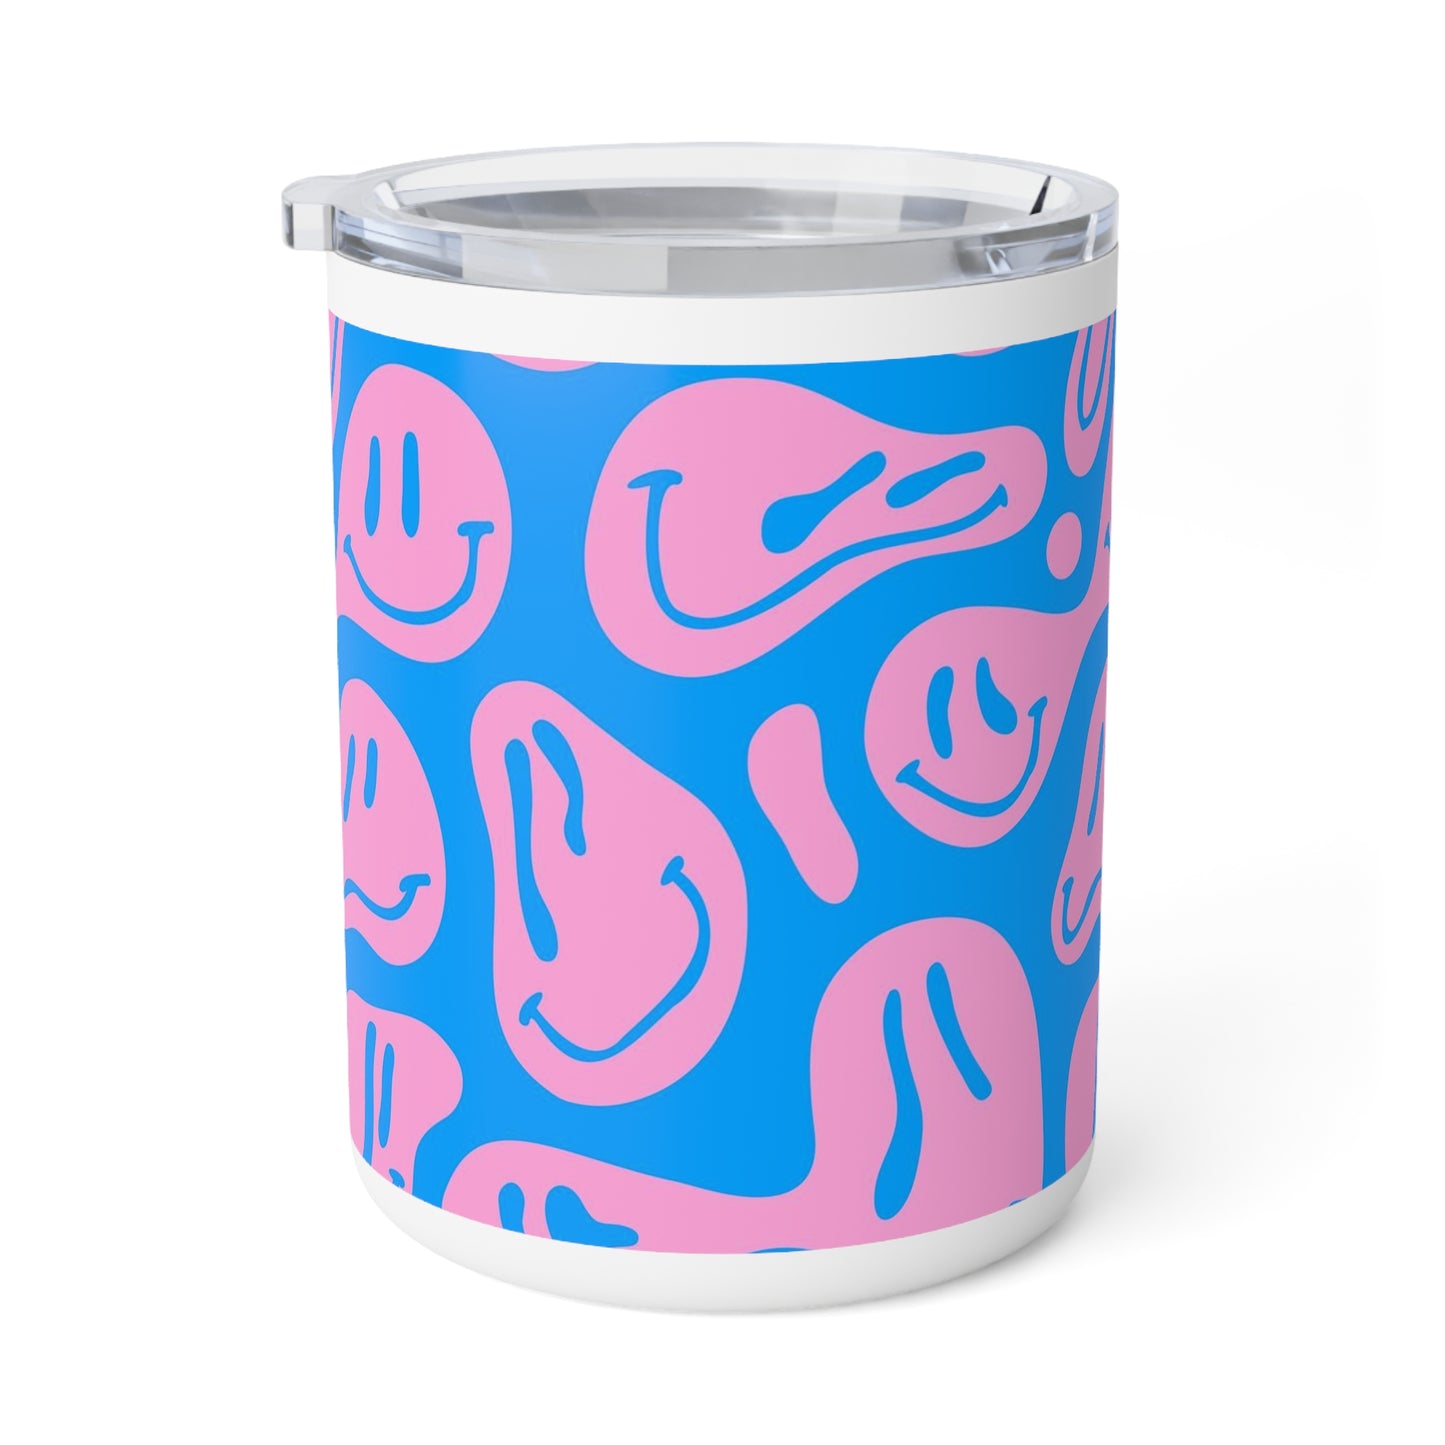 Melting Smileys | Insulated Coffee Mug, 10oz